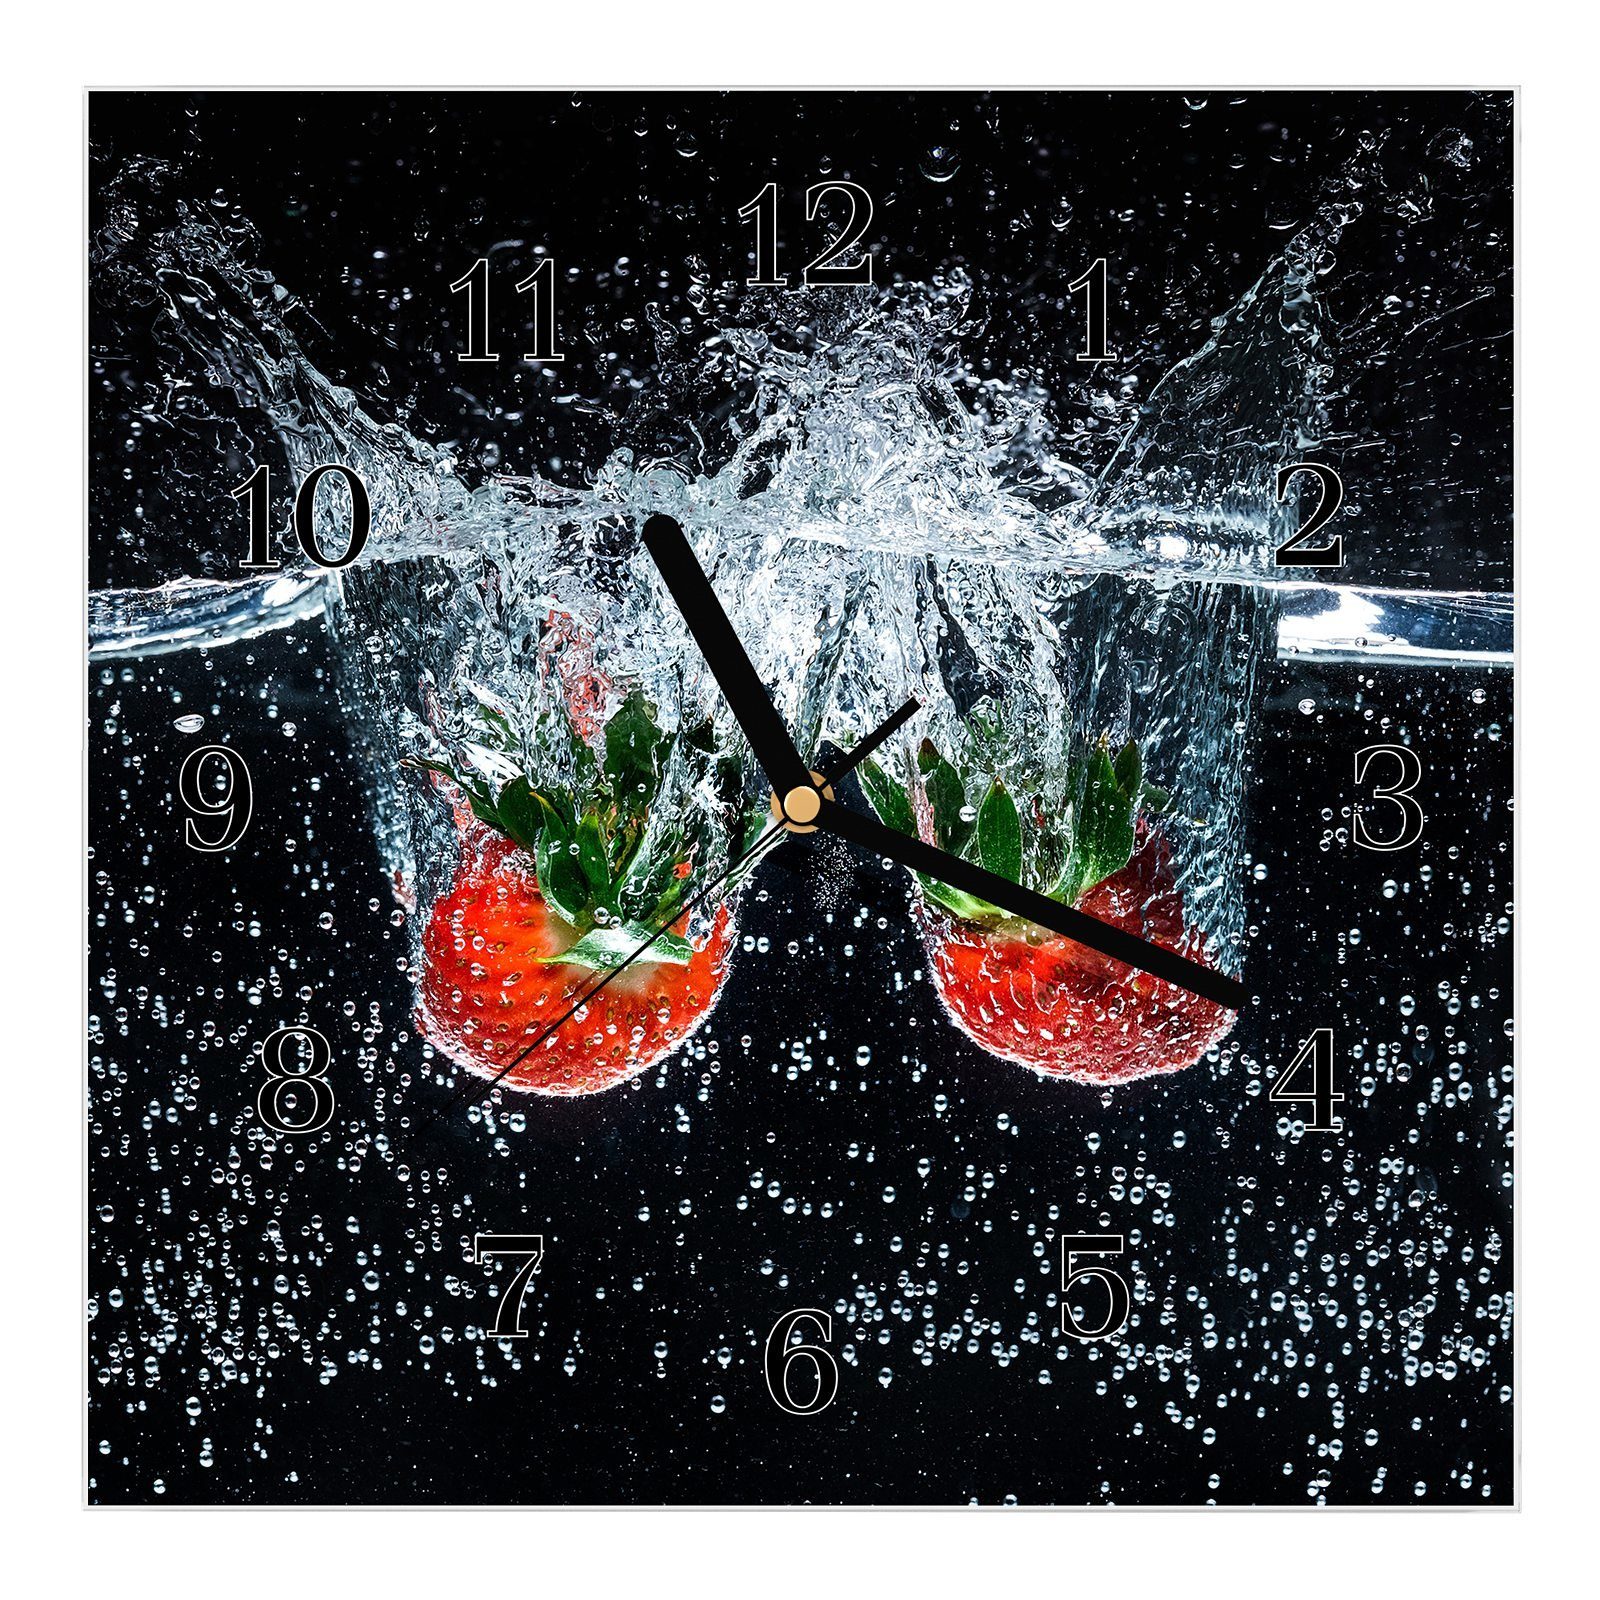 Primedeco Wanduhr Glasuhr Wanduhr Wandkunst Größe 30 x 30 cm mit Motiv Erdbeeren in Wasser fallend